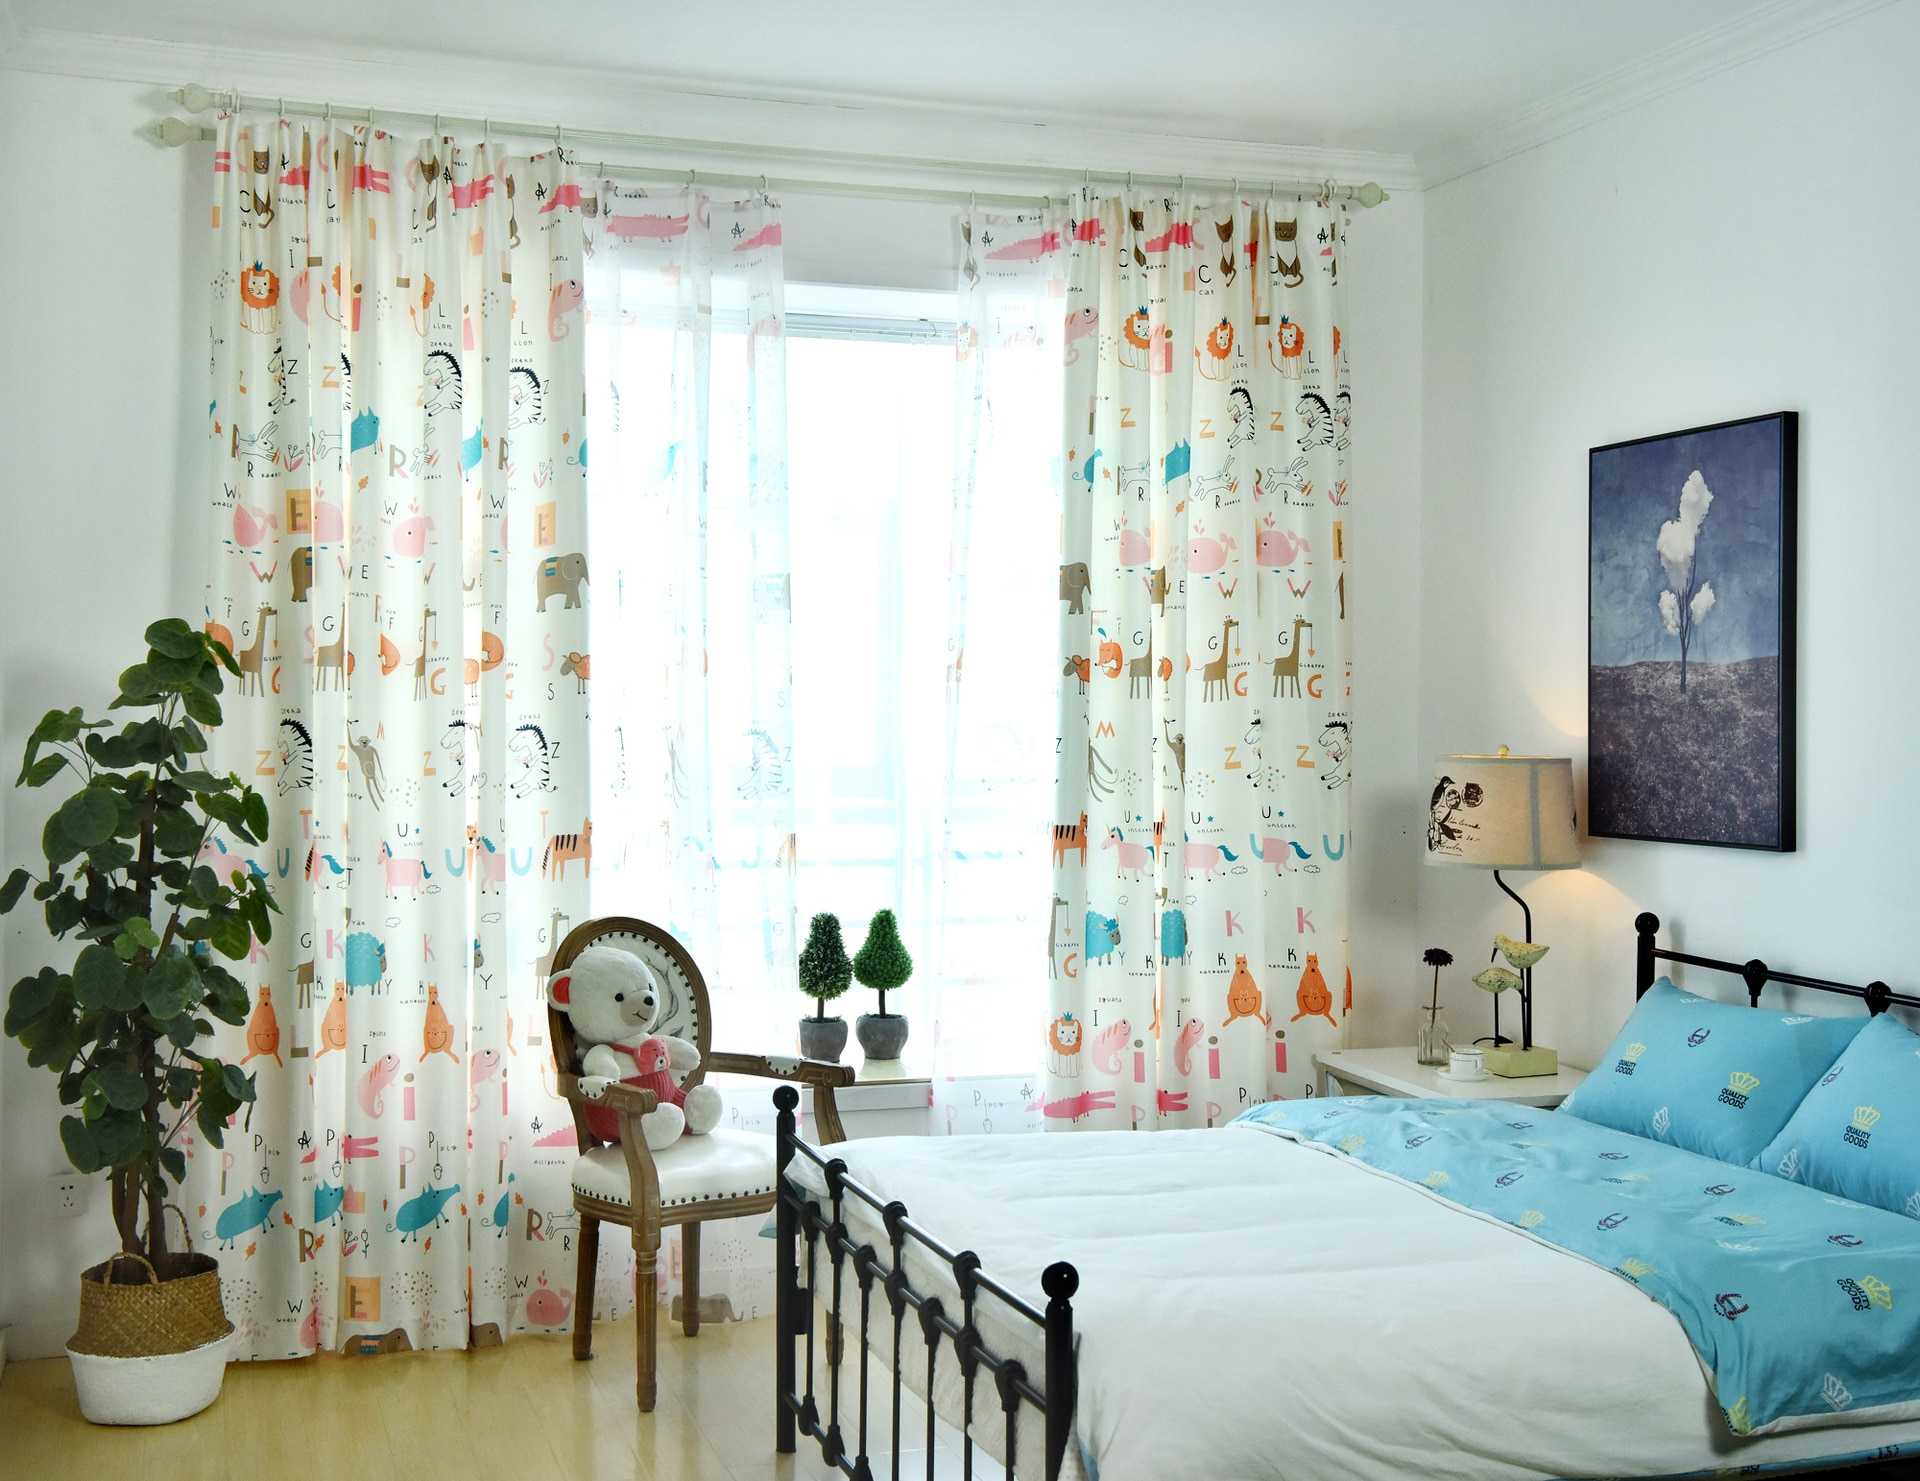 Дизайн штор для детской комнаты — 55 фото новинок штор в интерьере детской